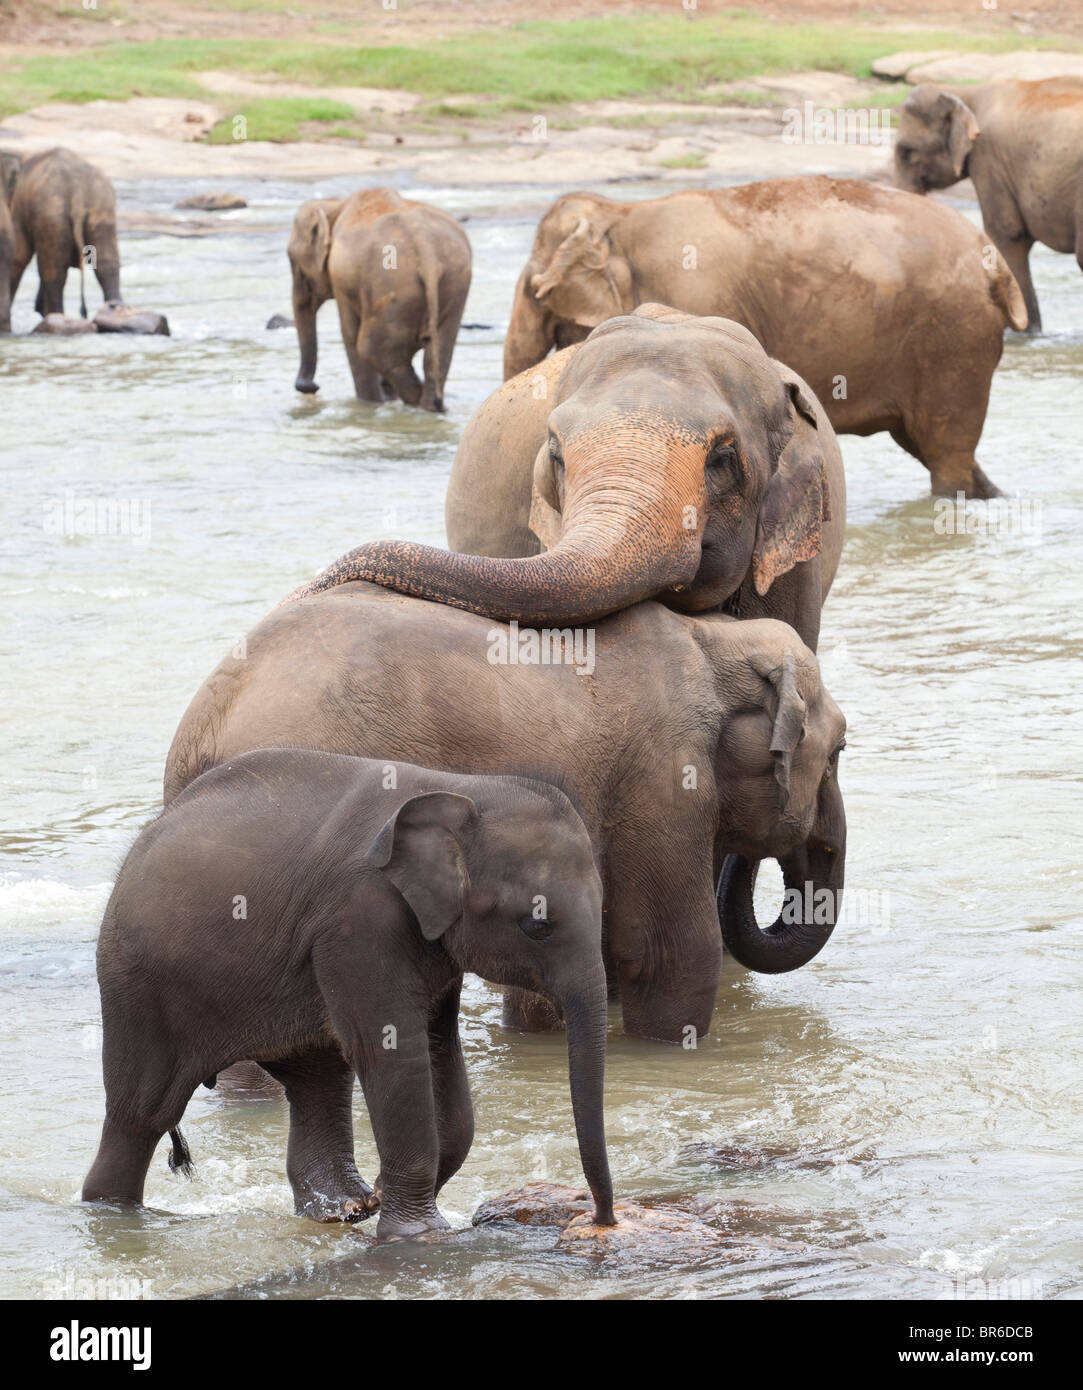 Eine Herde Elefanten Baden in einem seichten Fluss in der Nähe von The Pinnawela-Elefantenwaisenhaus in Sri Lanka Stockfoto